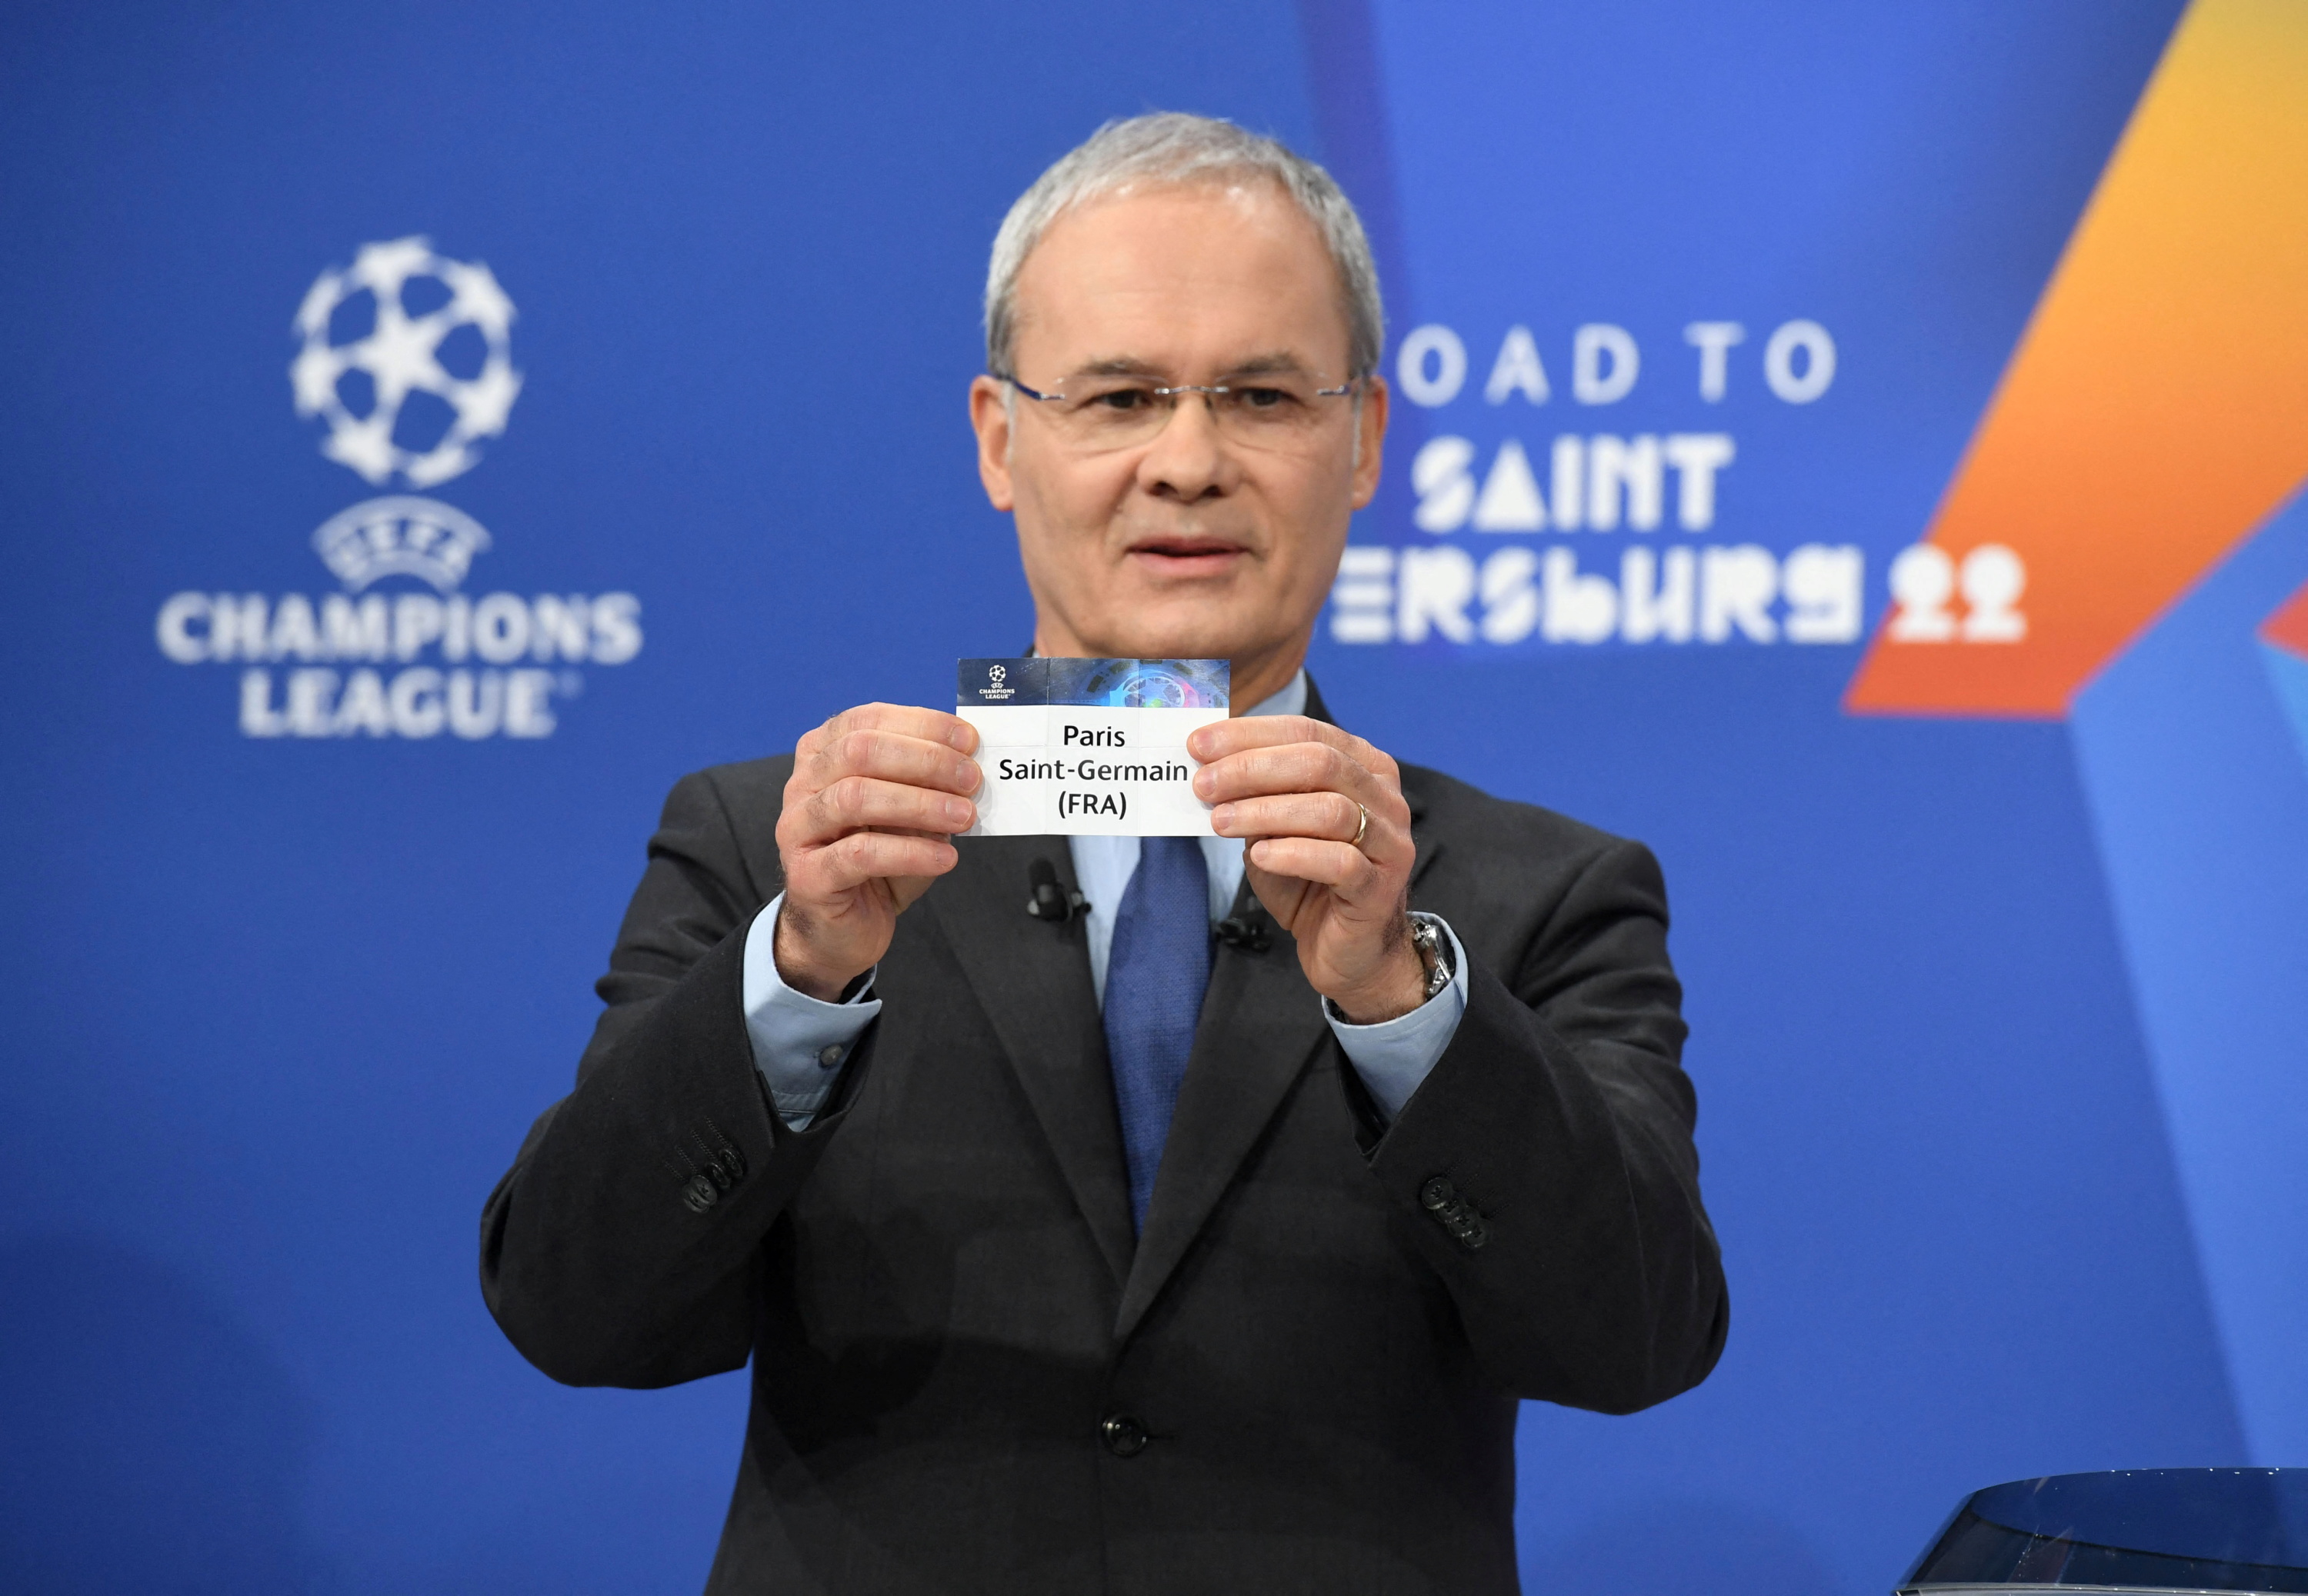 Le ballon de la phase finale de Champions League 2021-2022 dévoilé